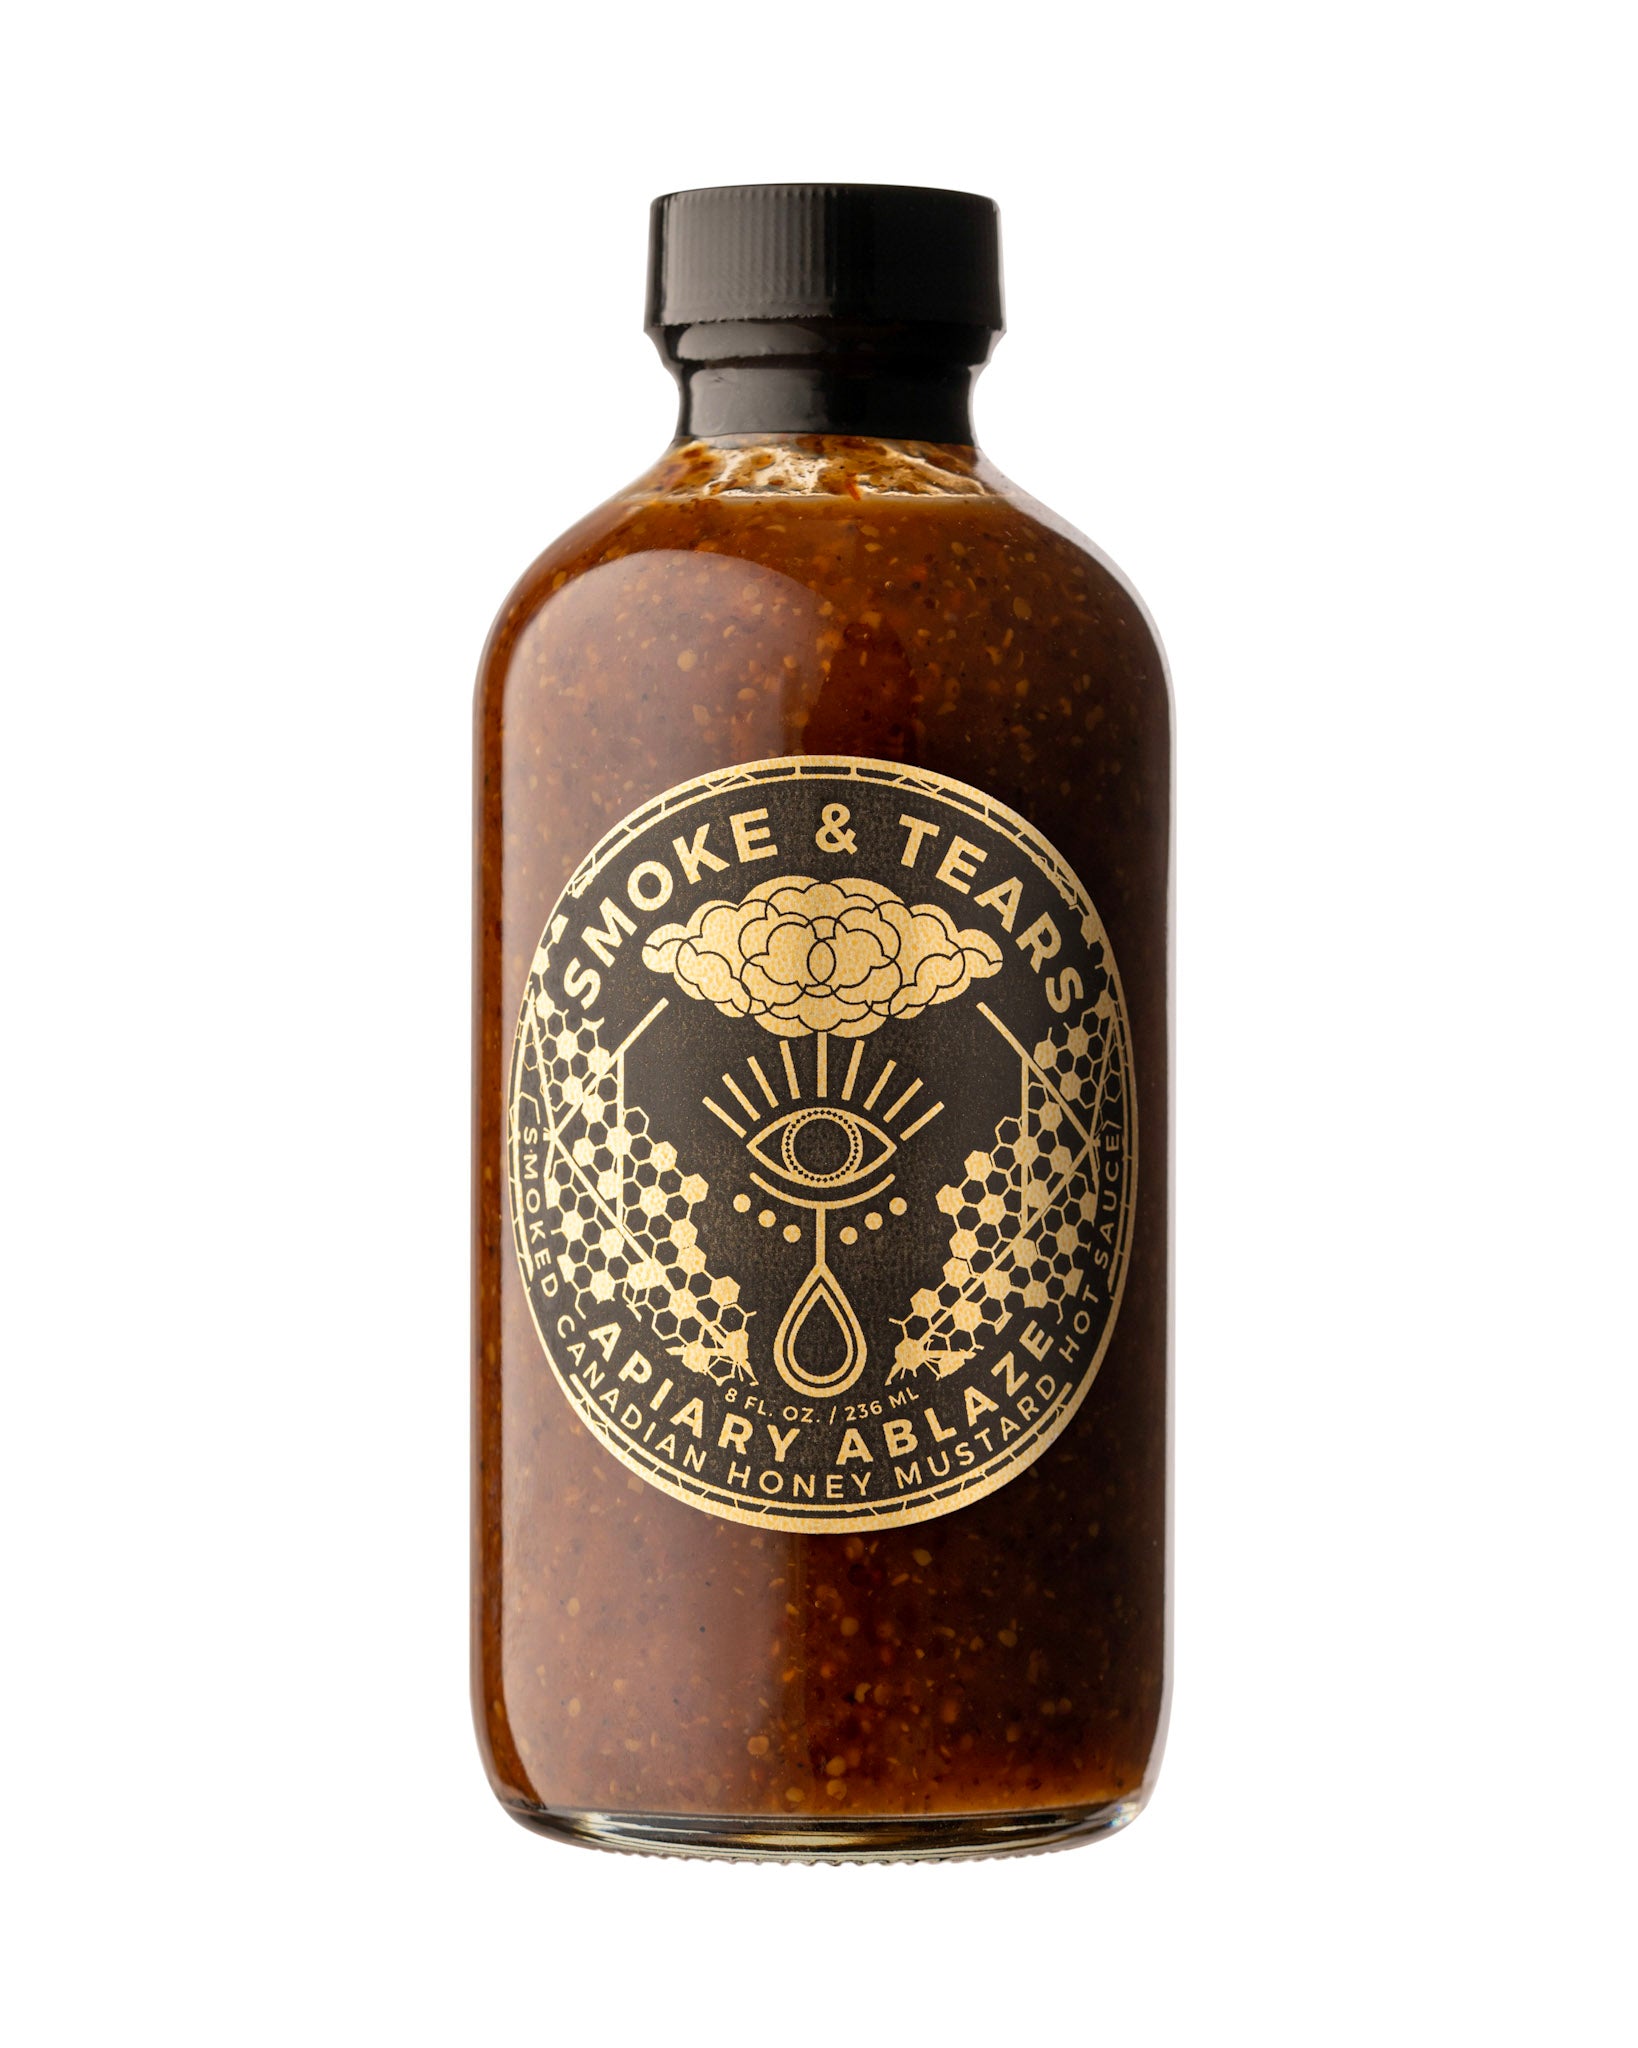 APIARY ABLAZE 🐝 Smoked Honey Mustard Sting Hot Sauce